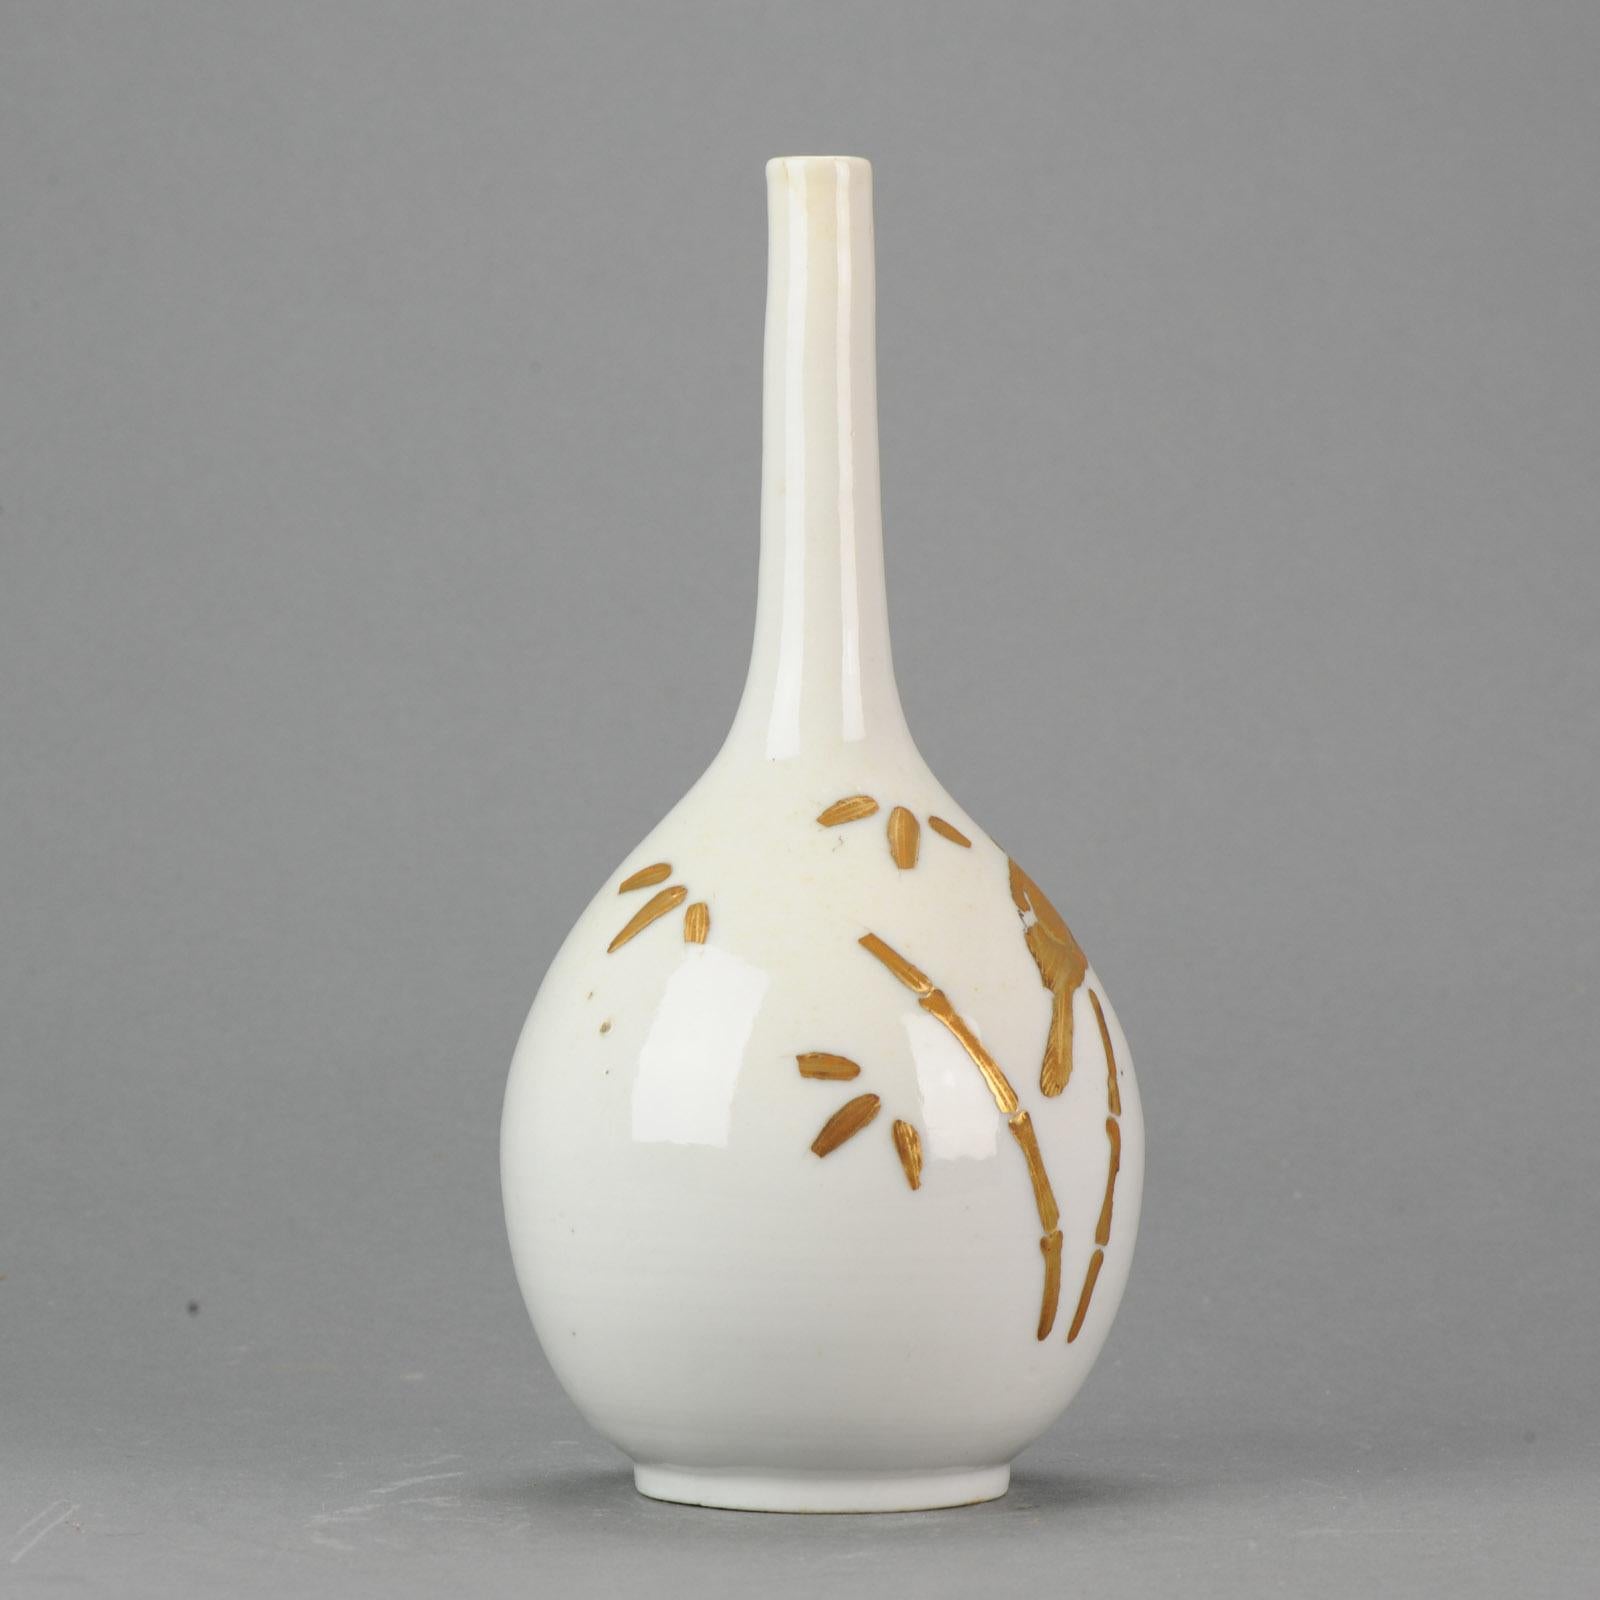 Chinese 1680-1720 Edo period Japanese Porcelain Gold Lacquer Vase Japan Bird Vase